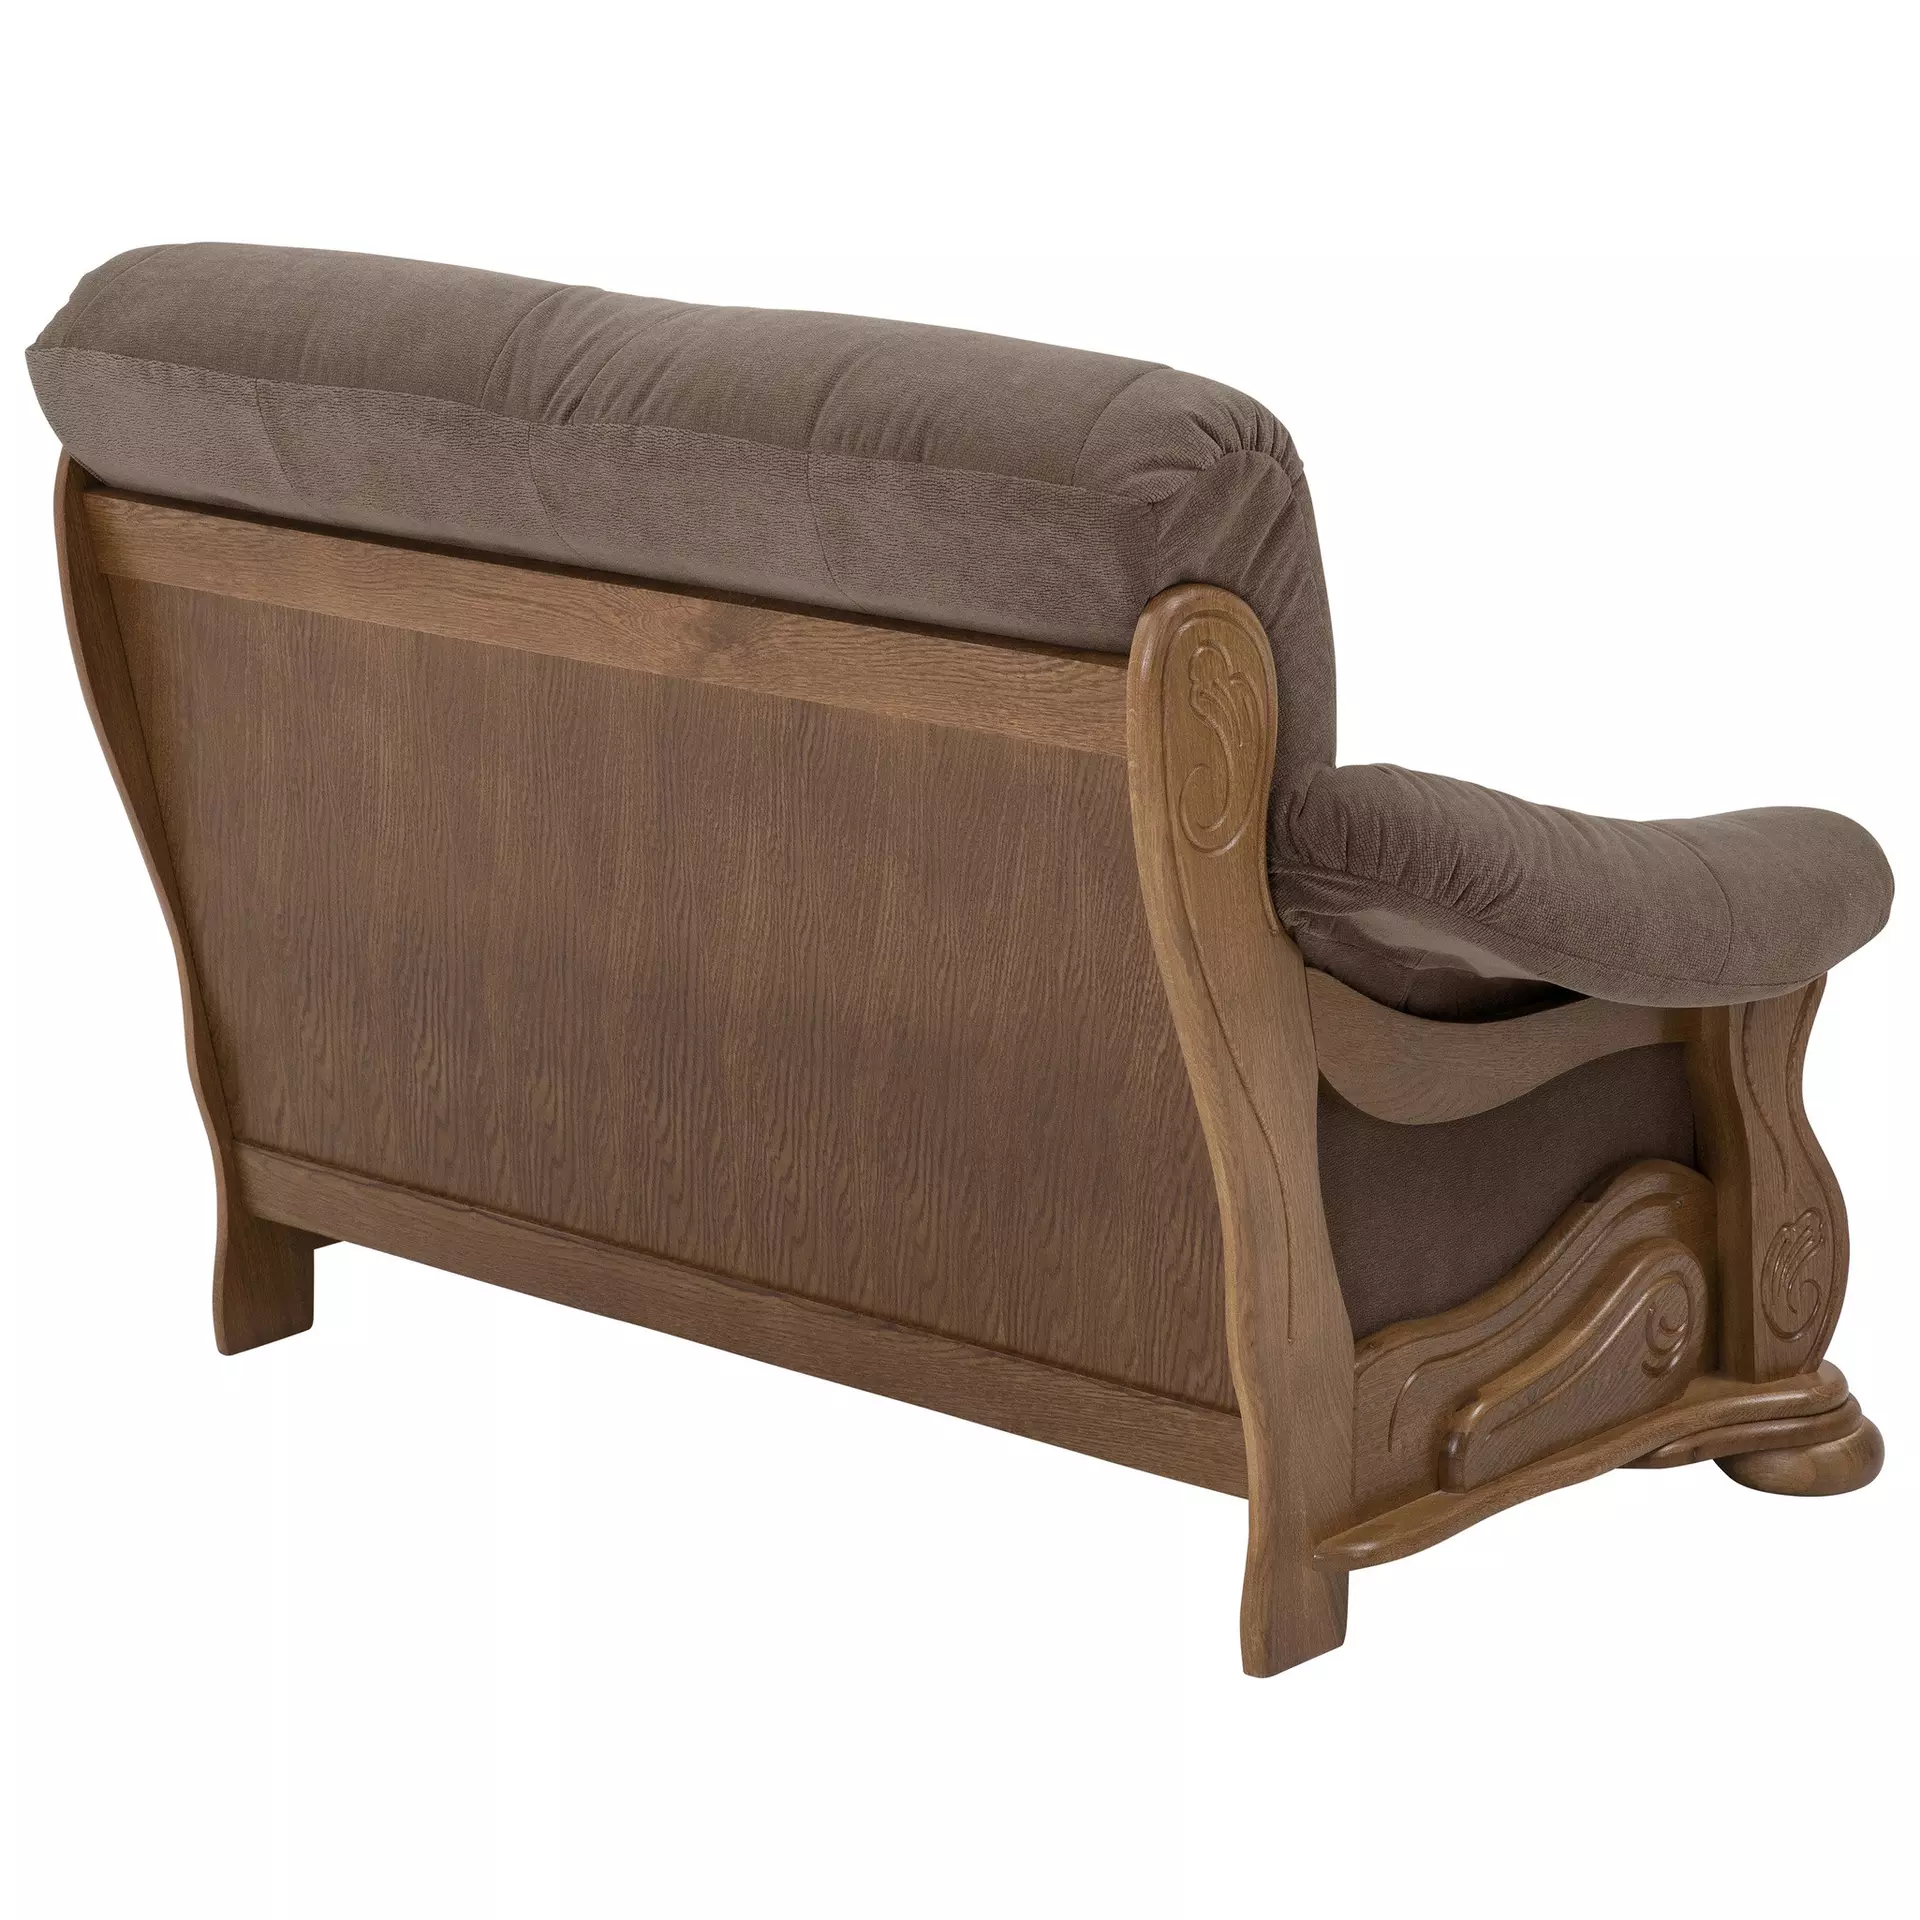 Sofa 2-Sitzer Tennessee Max Winzer Textil 95 x 95 x 148 cm